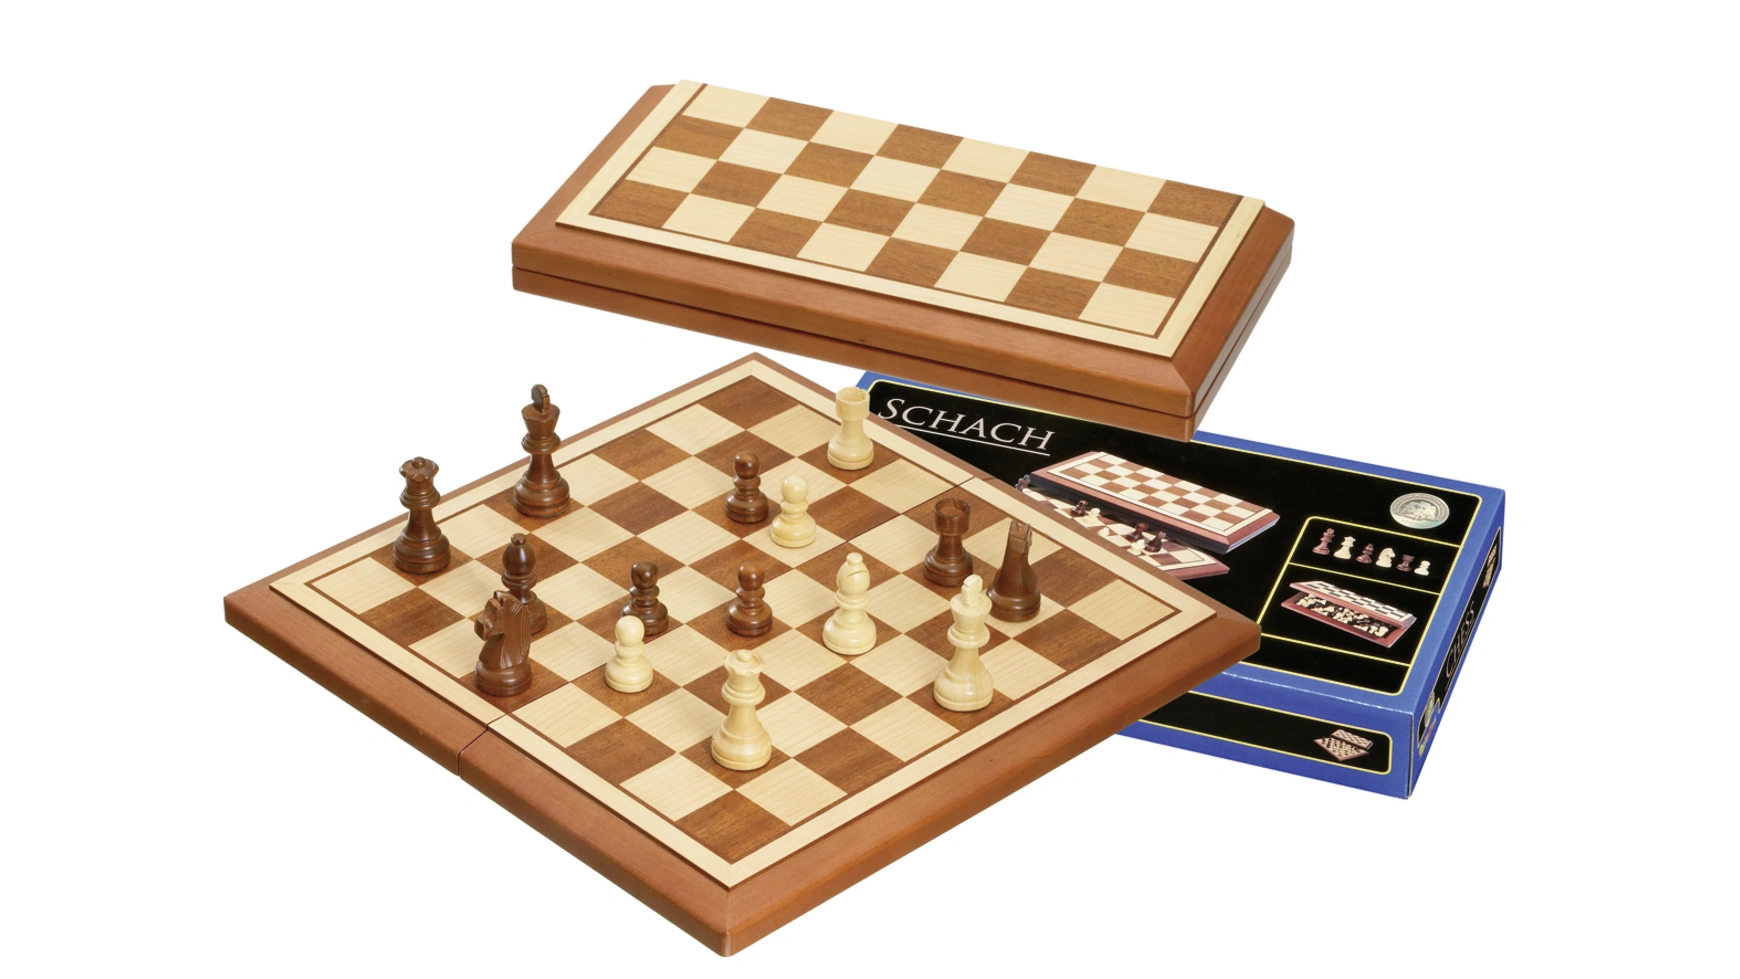 Шахматный футляр белград, поле 40 мм Philos-Spiele шахматная кассета магнитная поле 25 мм